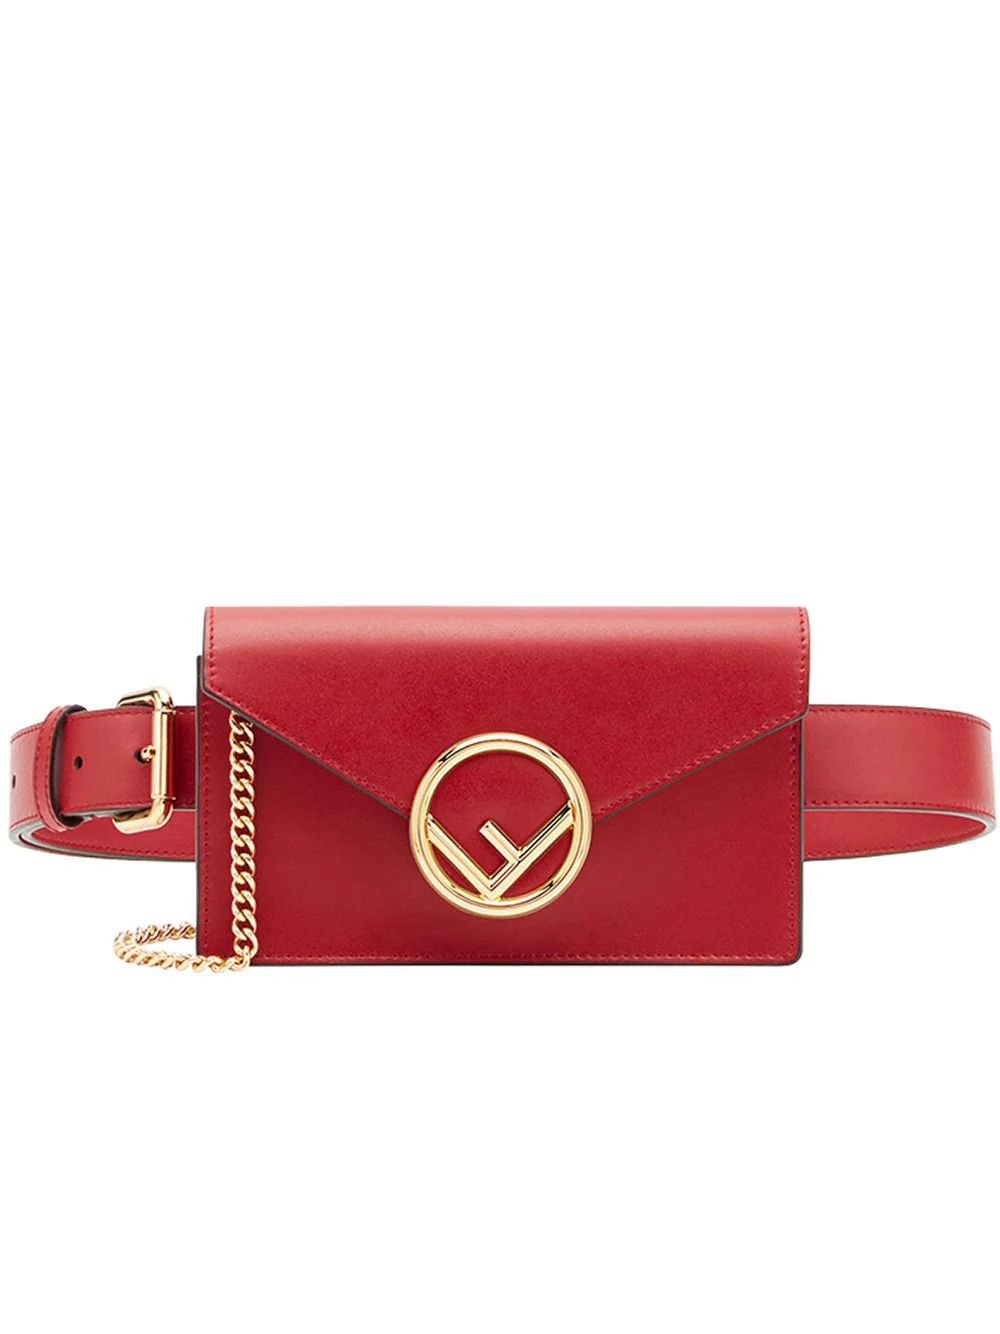 Fendi logo belt bag - Red | FarFetch Global